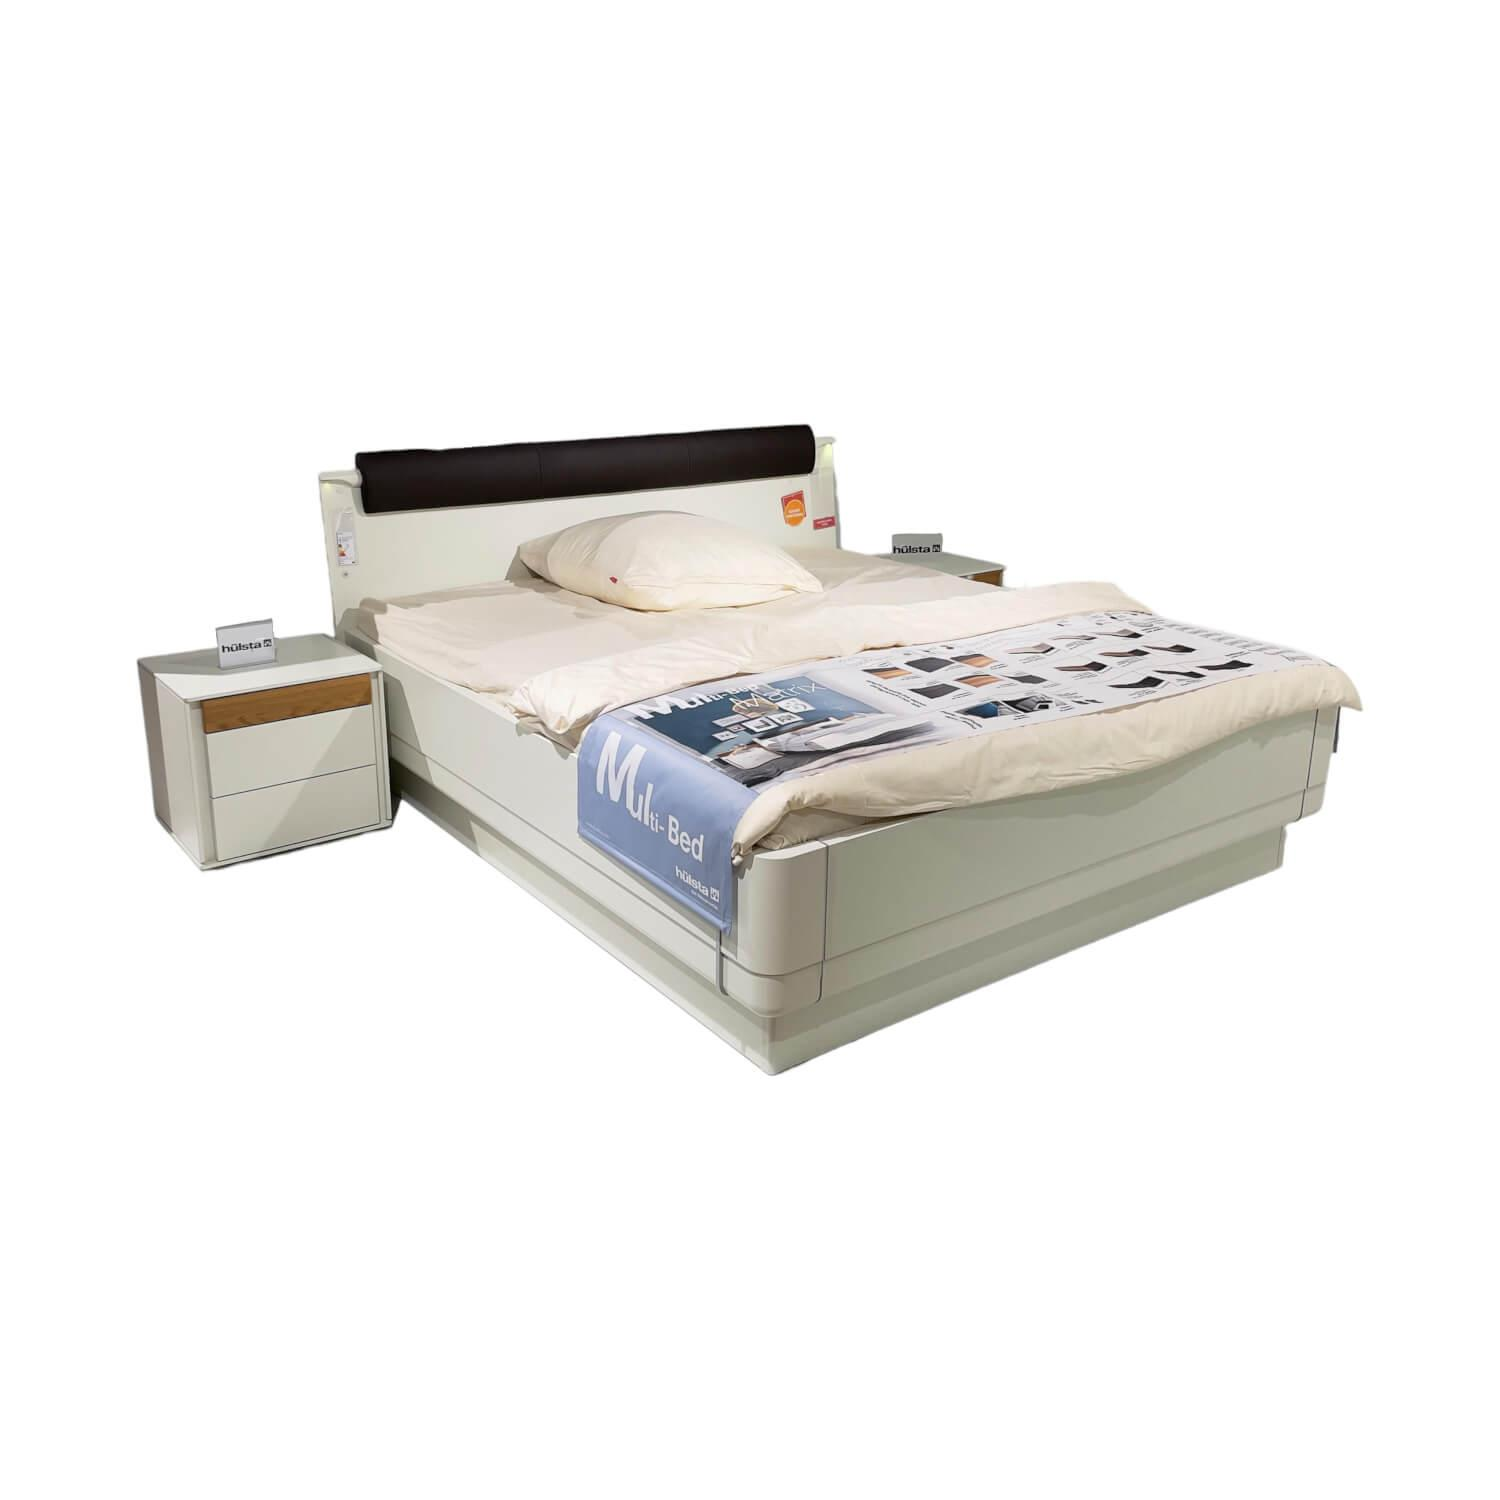 Doppelbett Multi Bed 4271 Lack Weiß Aufsatzpolster Leder 5126 Mocca Braun Mit Konsolen Und Beleuchtung Ohne Mattratze Und Lattenrost